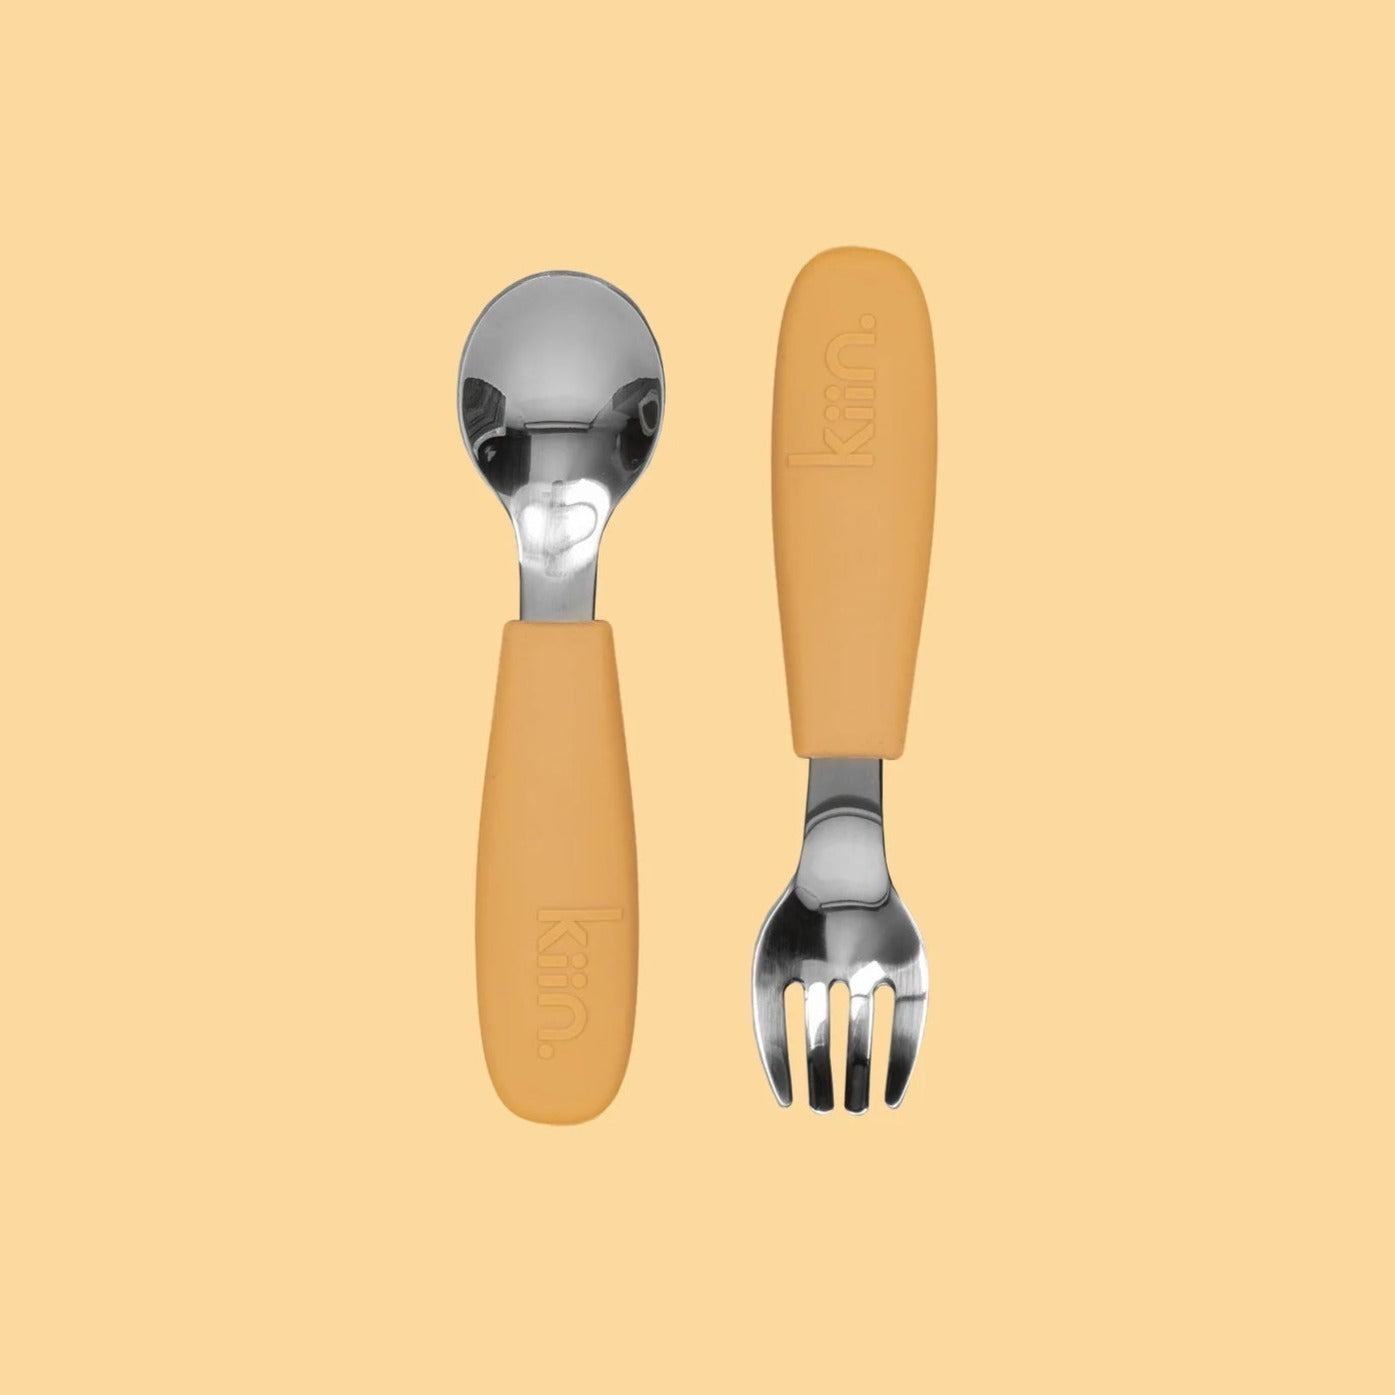 Kiin cutlery set - angus and dudley